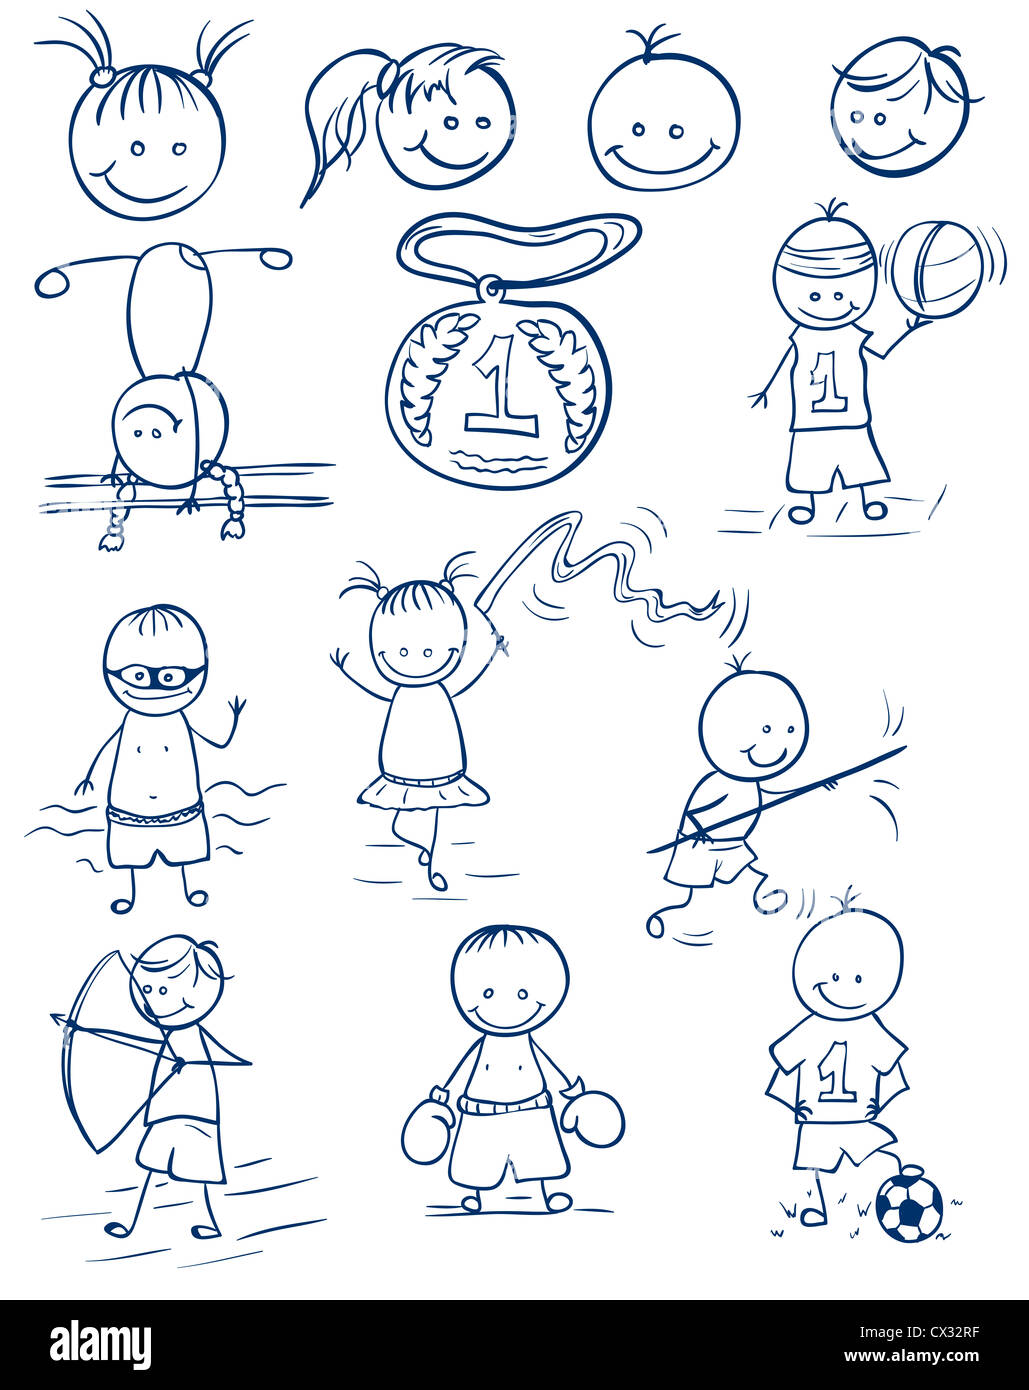 Lustige Kinder Bilder von verschiedenen Athleten. Abbildung in der Stil-Doodle gemacht. Stockfoto